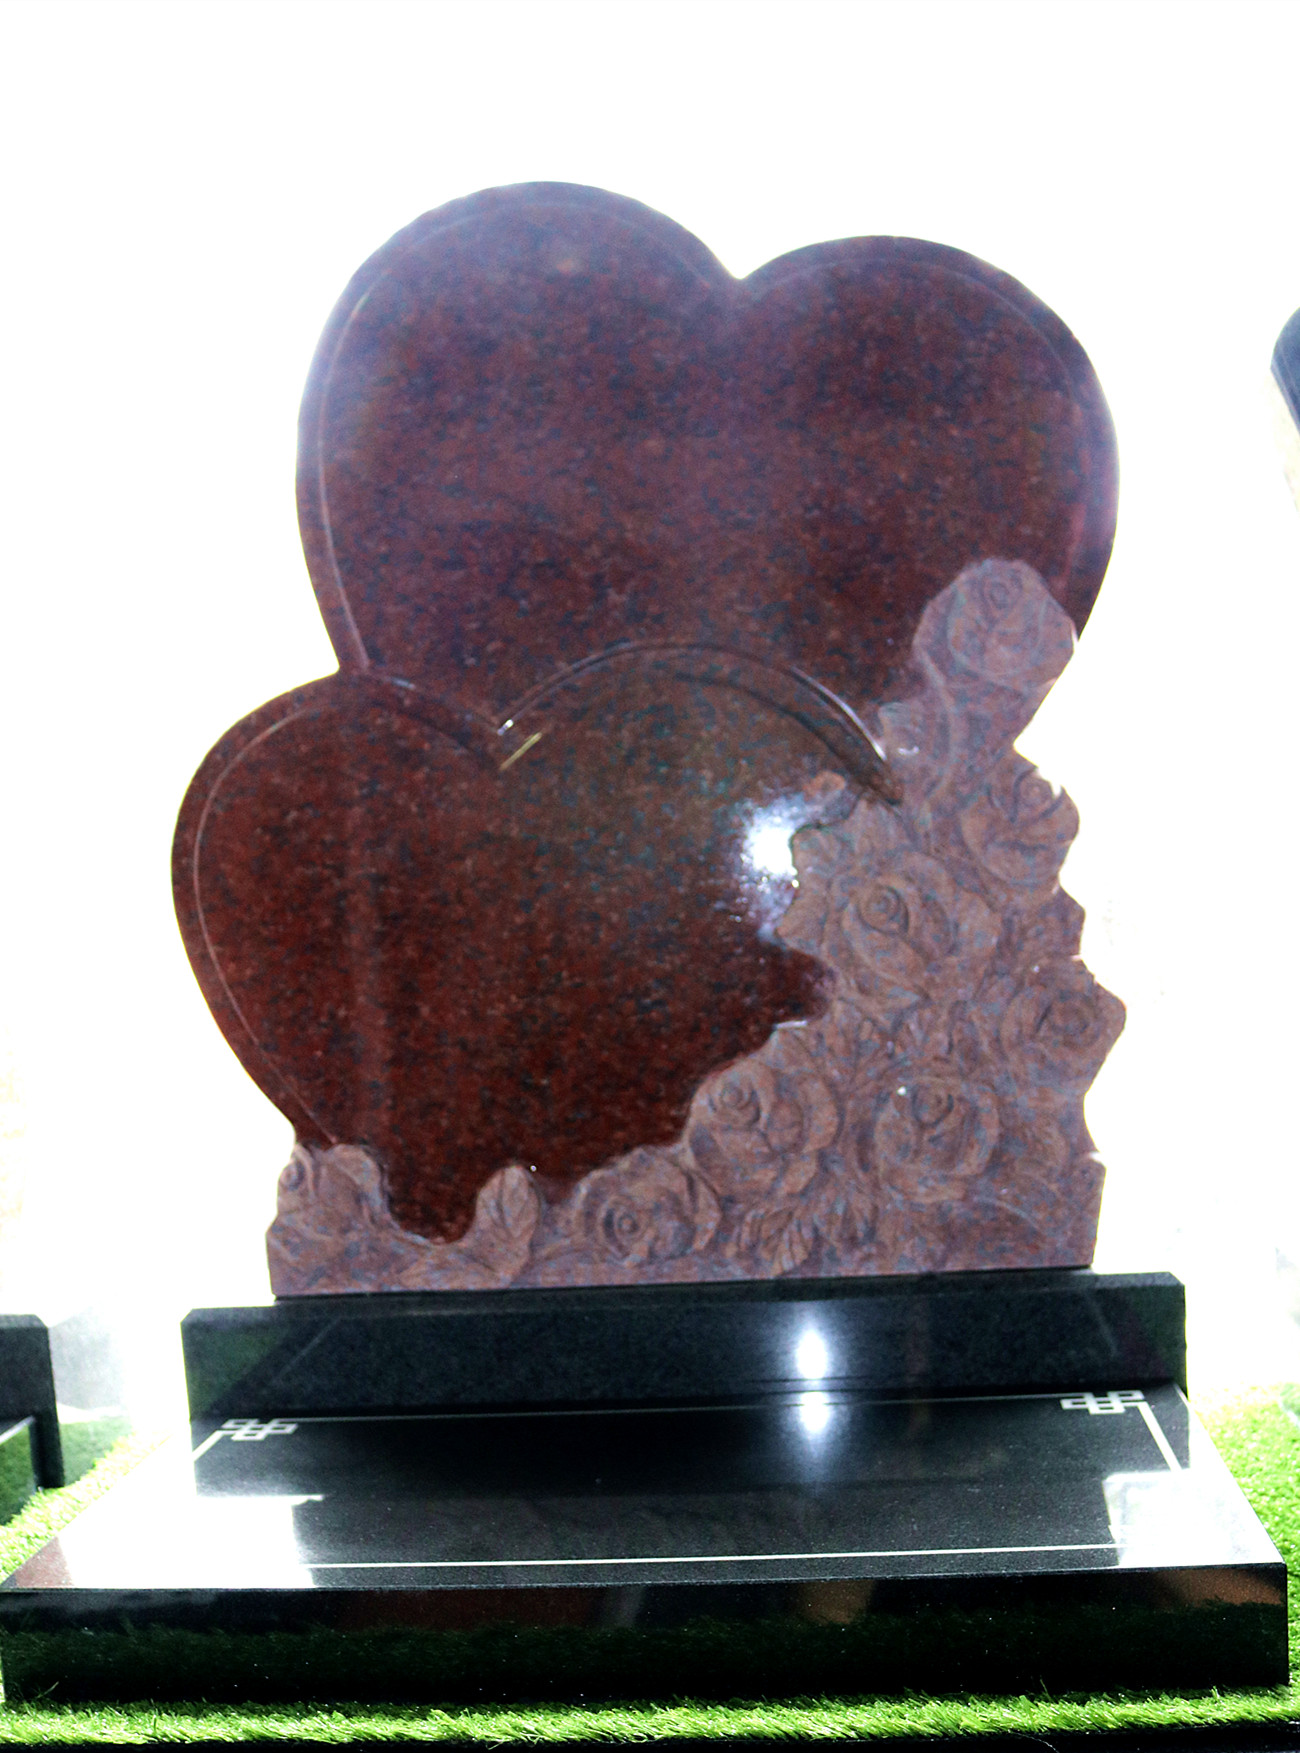 小型夫妻合葬艺术墓碑,以爱心玫瑰抒写夫妻恩爱情长的浪漫寓意